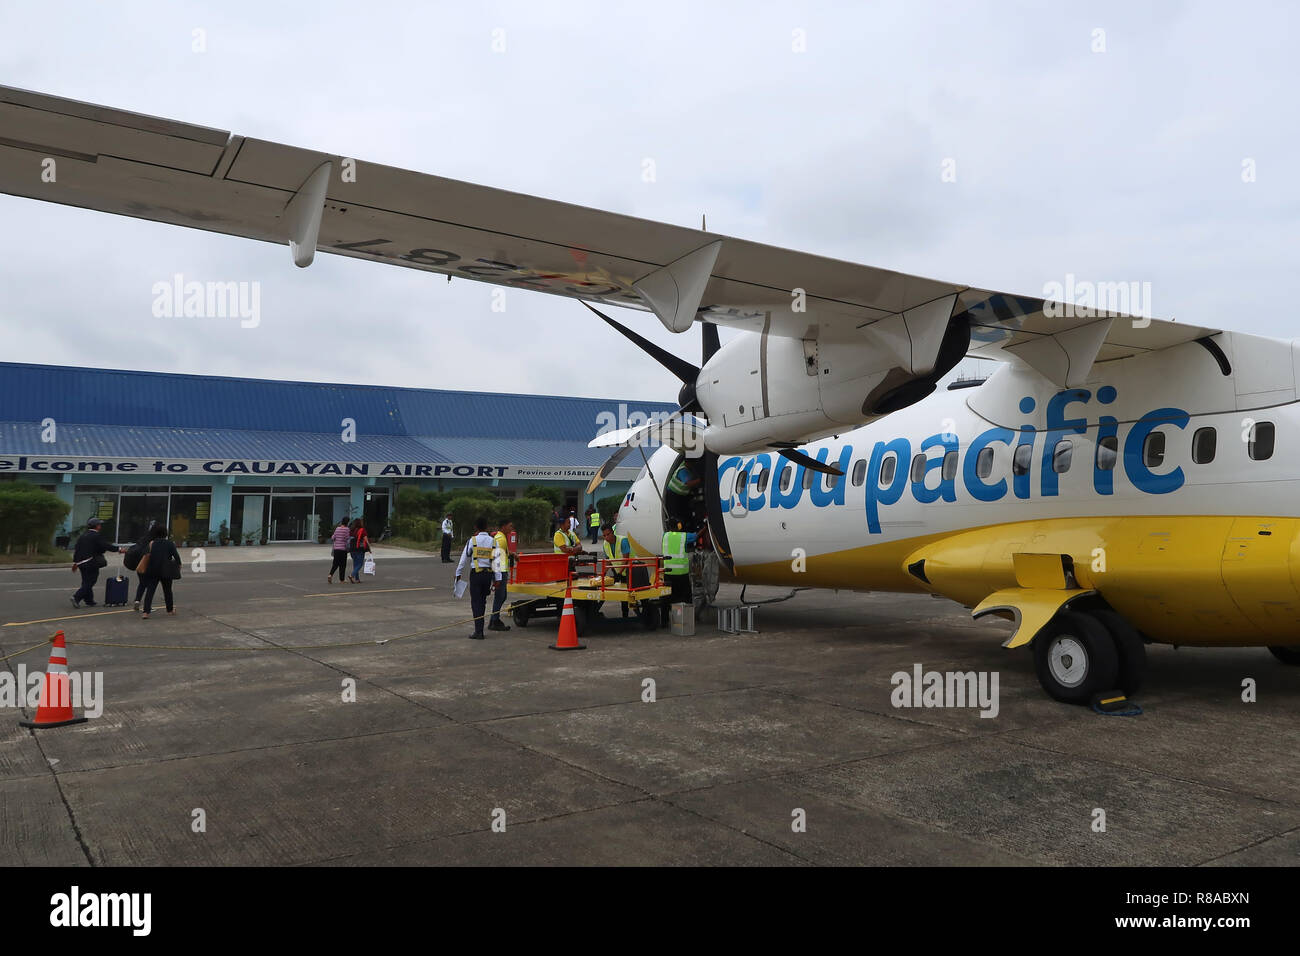 Gepäckabfertiger entladen Gepäck aus einem Cebu Pacific ATR 72-500 Flugzeug  der philippinischen Billigfluggesellschaft im Cauayan Airport, das das  allgemeine Gebiet von Cauayan, einer Stadt in der Provinz Isabela auf den  Philippinen, bedient